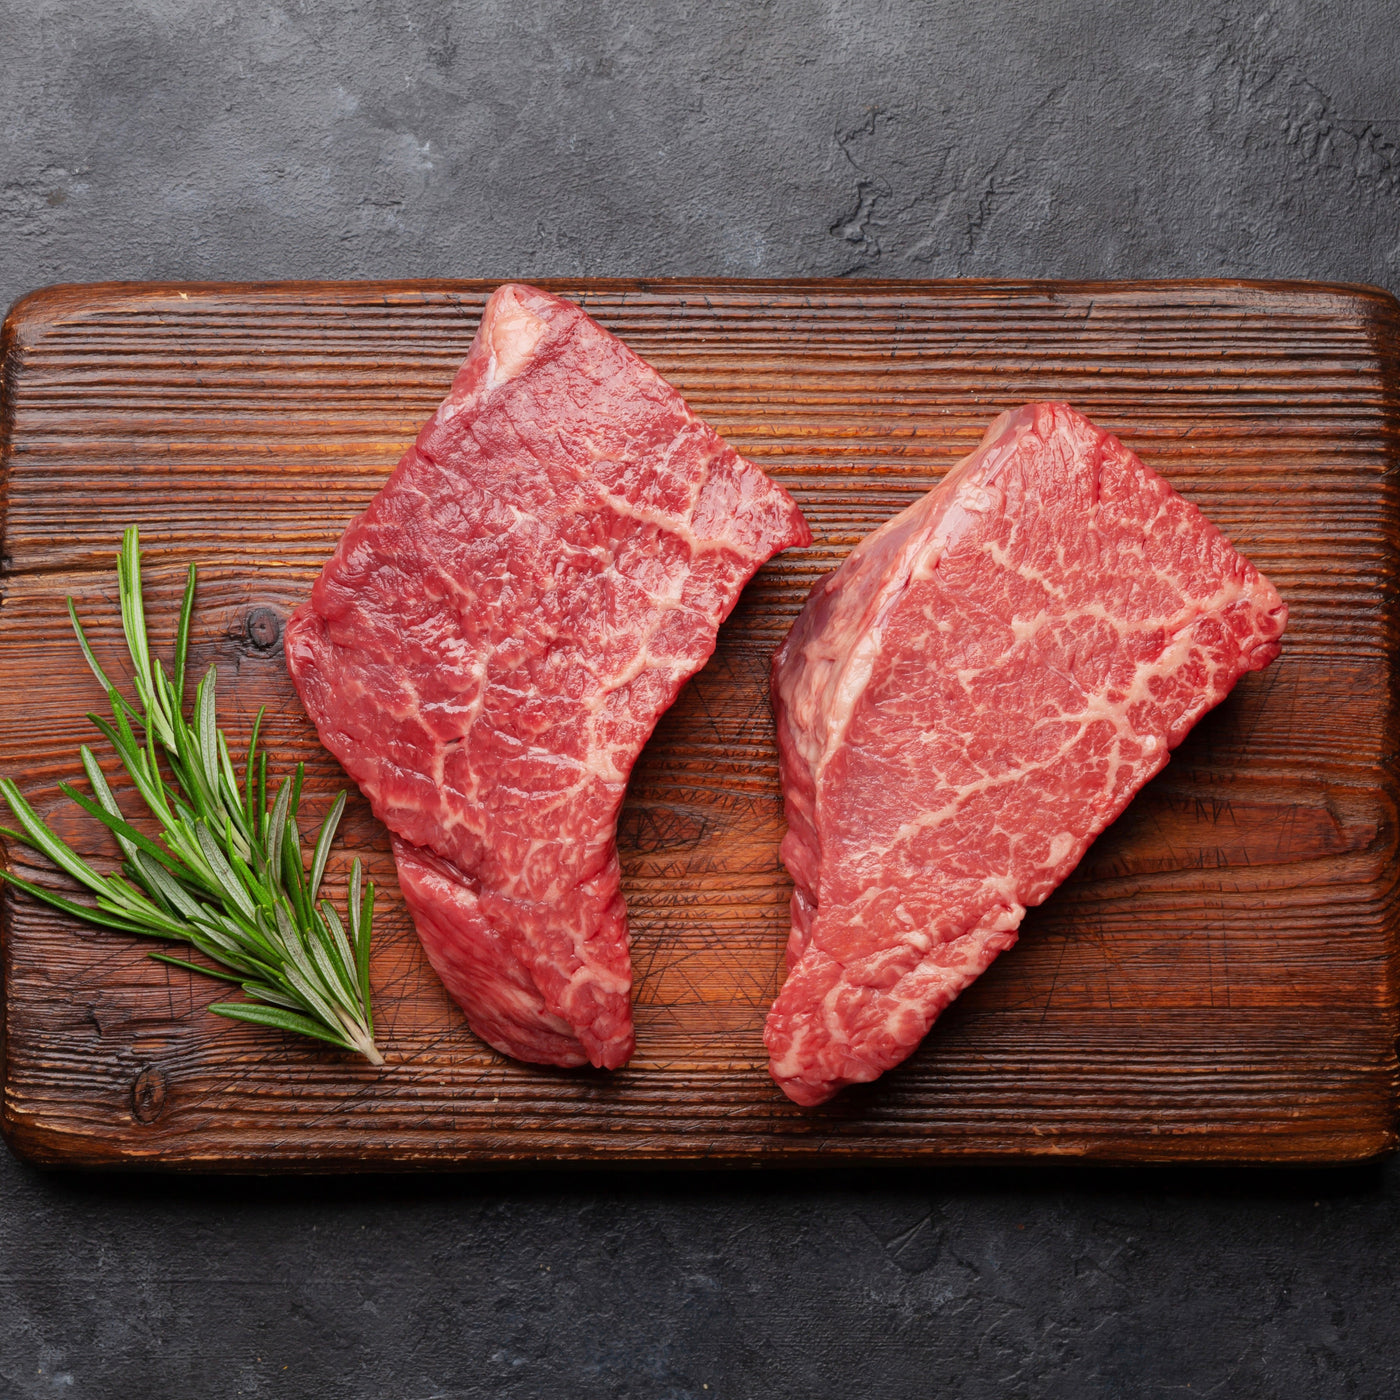 Wagyu Beef Minute Steak | Australia | 200g